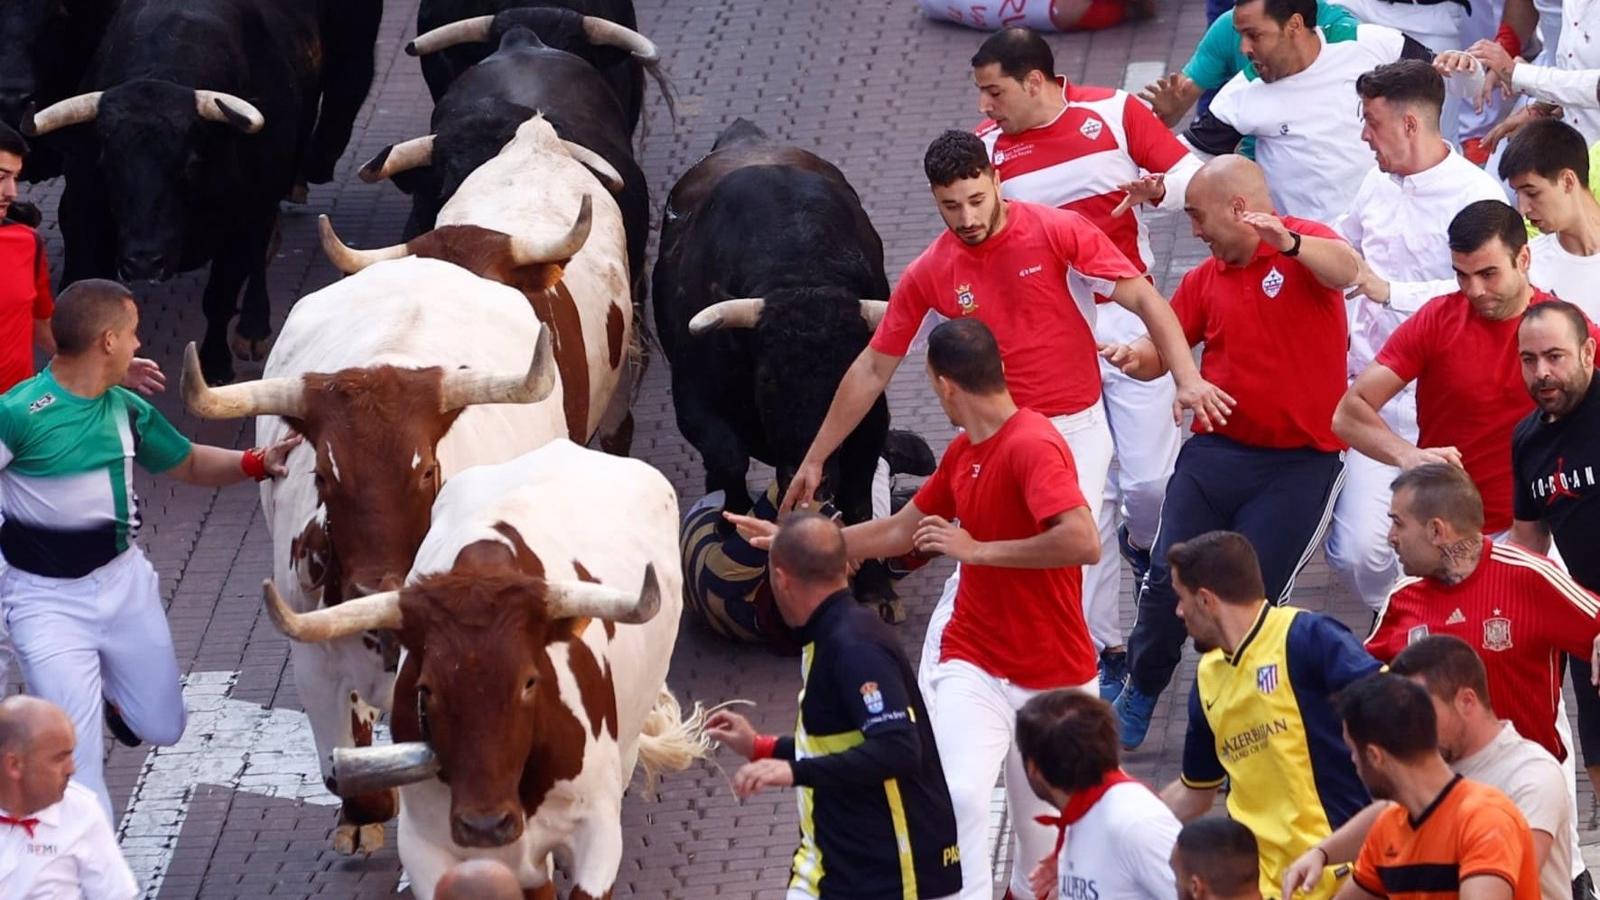 Los últimos dos encierros de San Sebastián de los Reyes dejan 13 heridos, uno por asta de toro